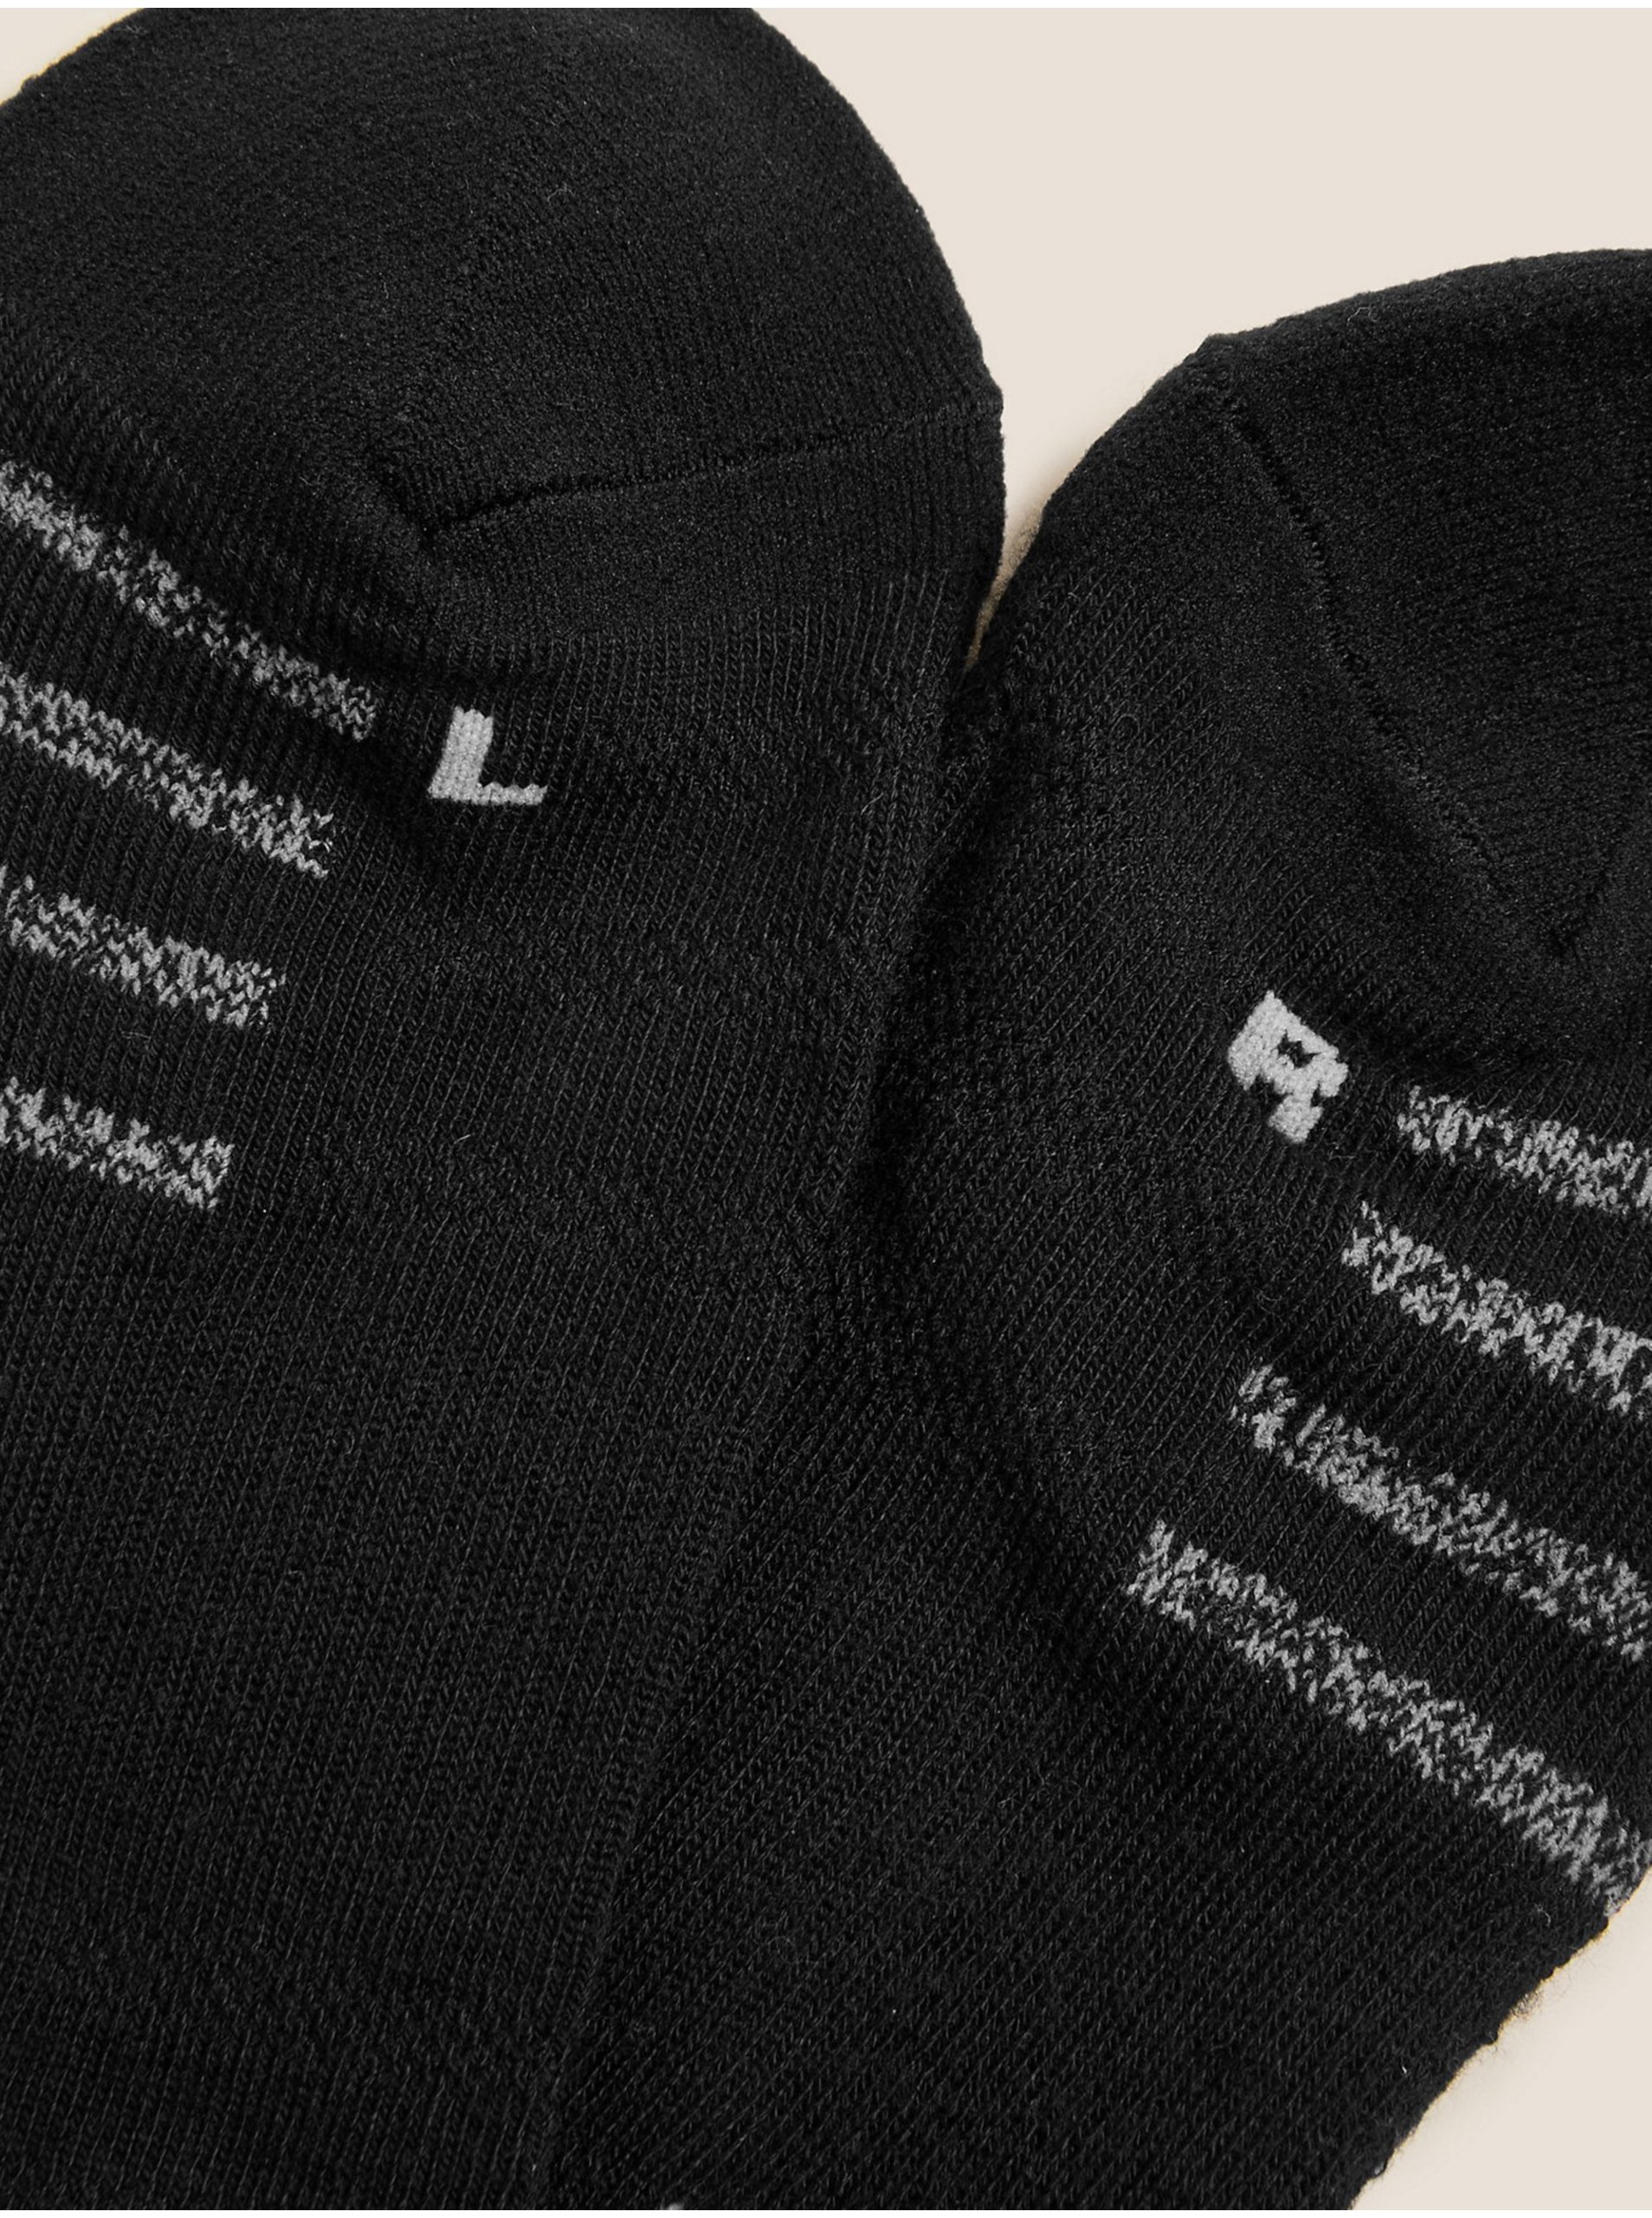 Lacno 5 párov športových ponožiek Freshfeet™ so šikmými pruhmi a vysokým podielom bavlny Marks & Spencer čierna